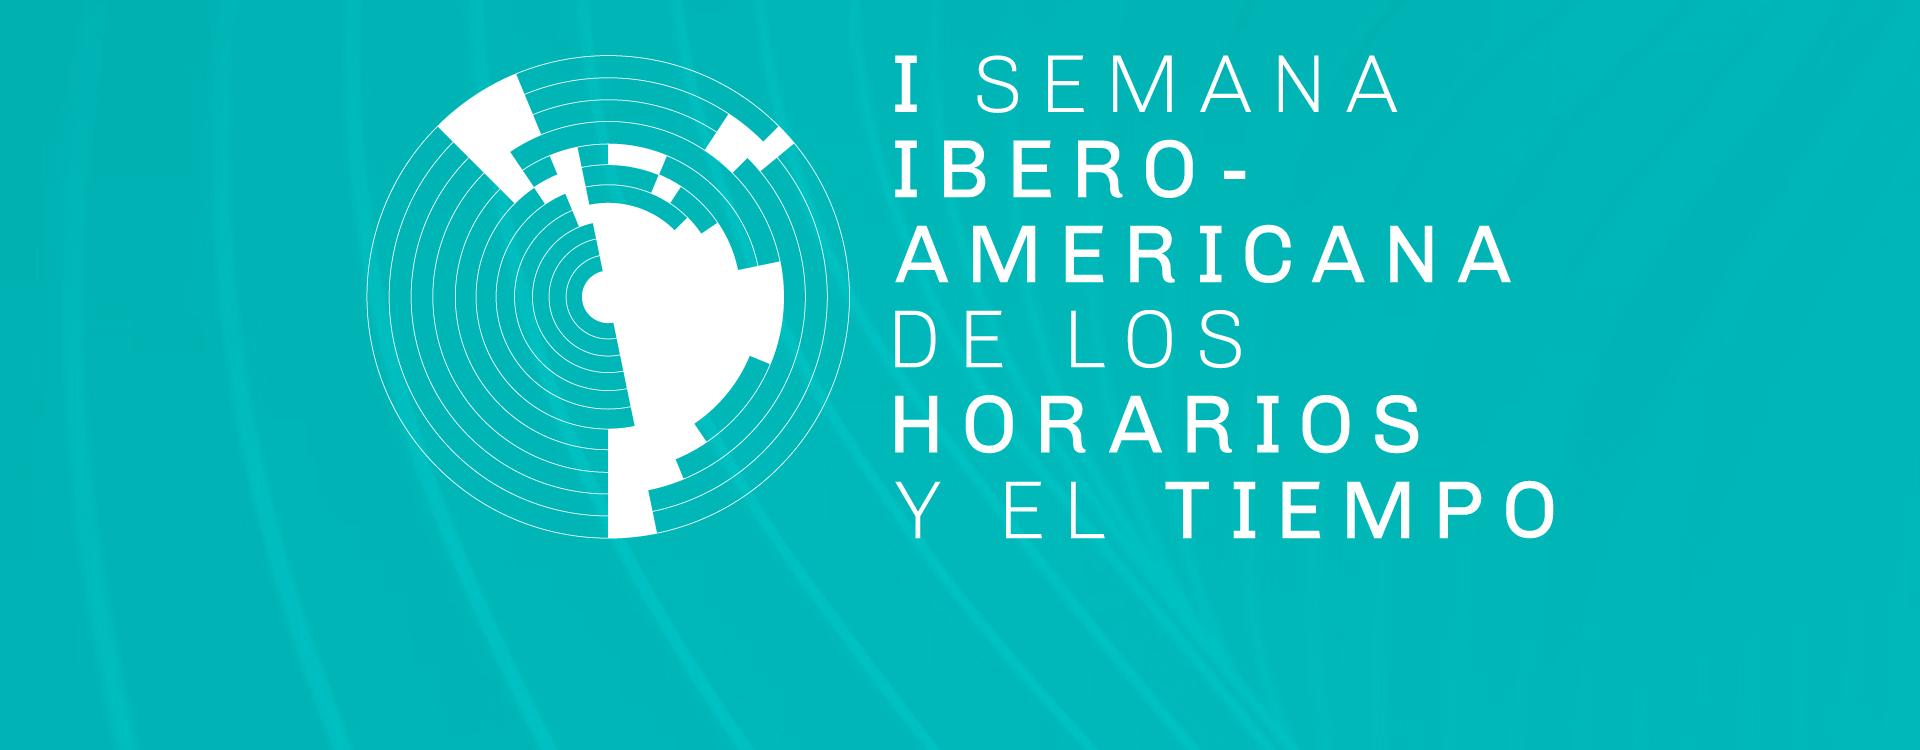 Imagen institucional del evento Primera Semana Iberoamericana de los Horarios y el Tiempo